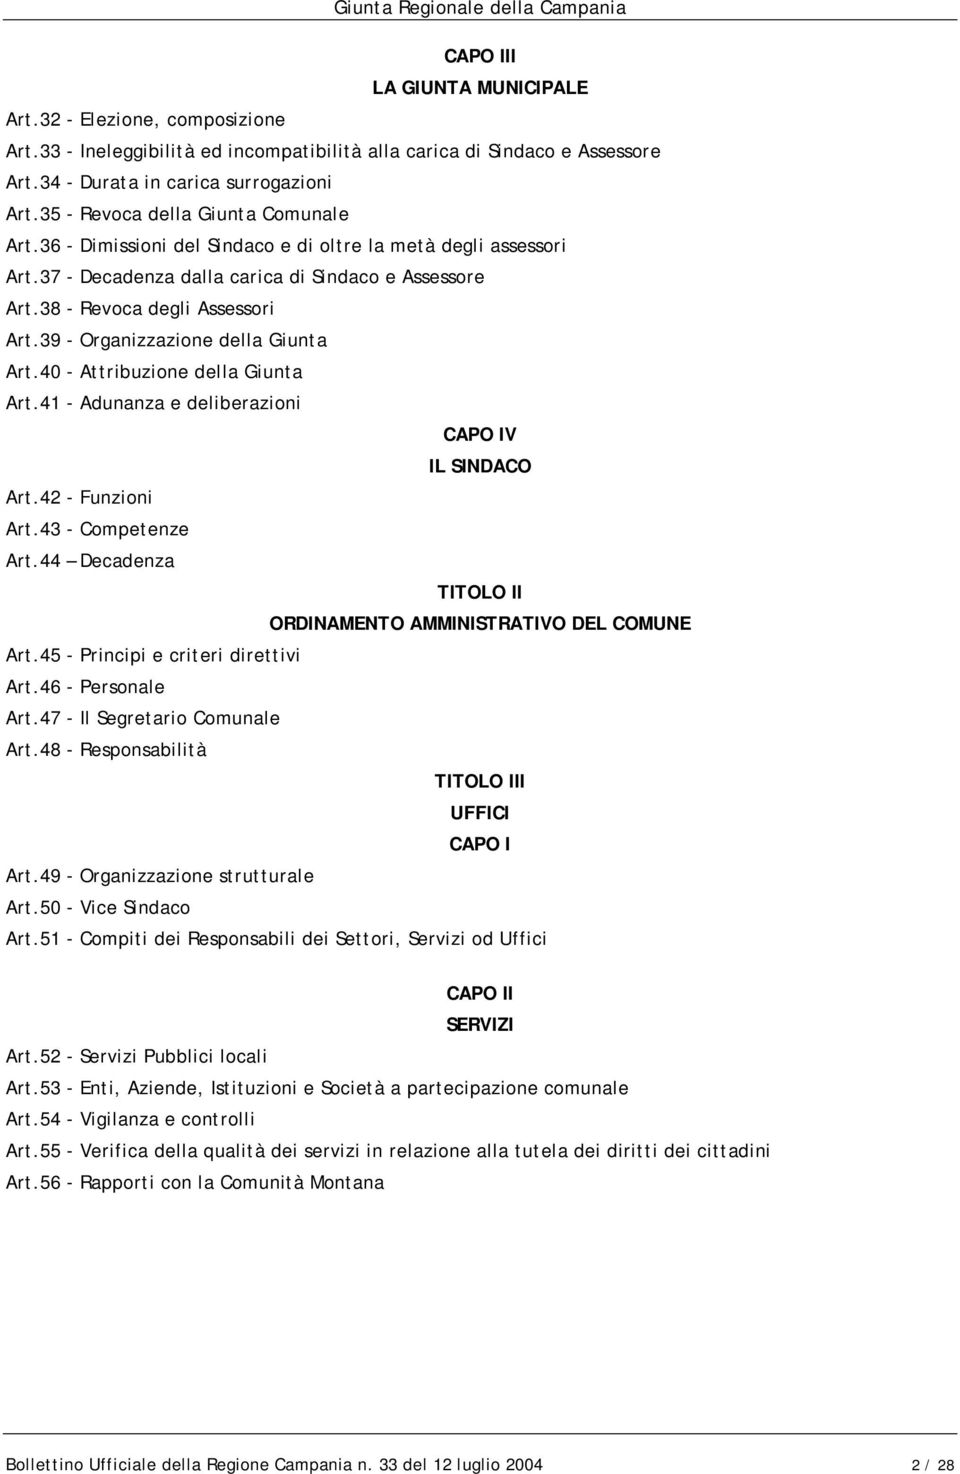 39 - Organizzazione della Giunta Art.40 - Attribuzione della Giunta Art.41 - Adunanza e deliberazioni CAPO IV IL SINDACO Art.42 - Funzioni Art.43 - Competenze Art.